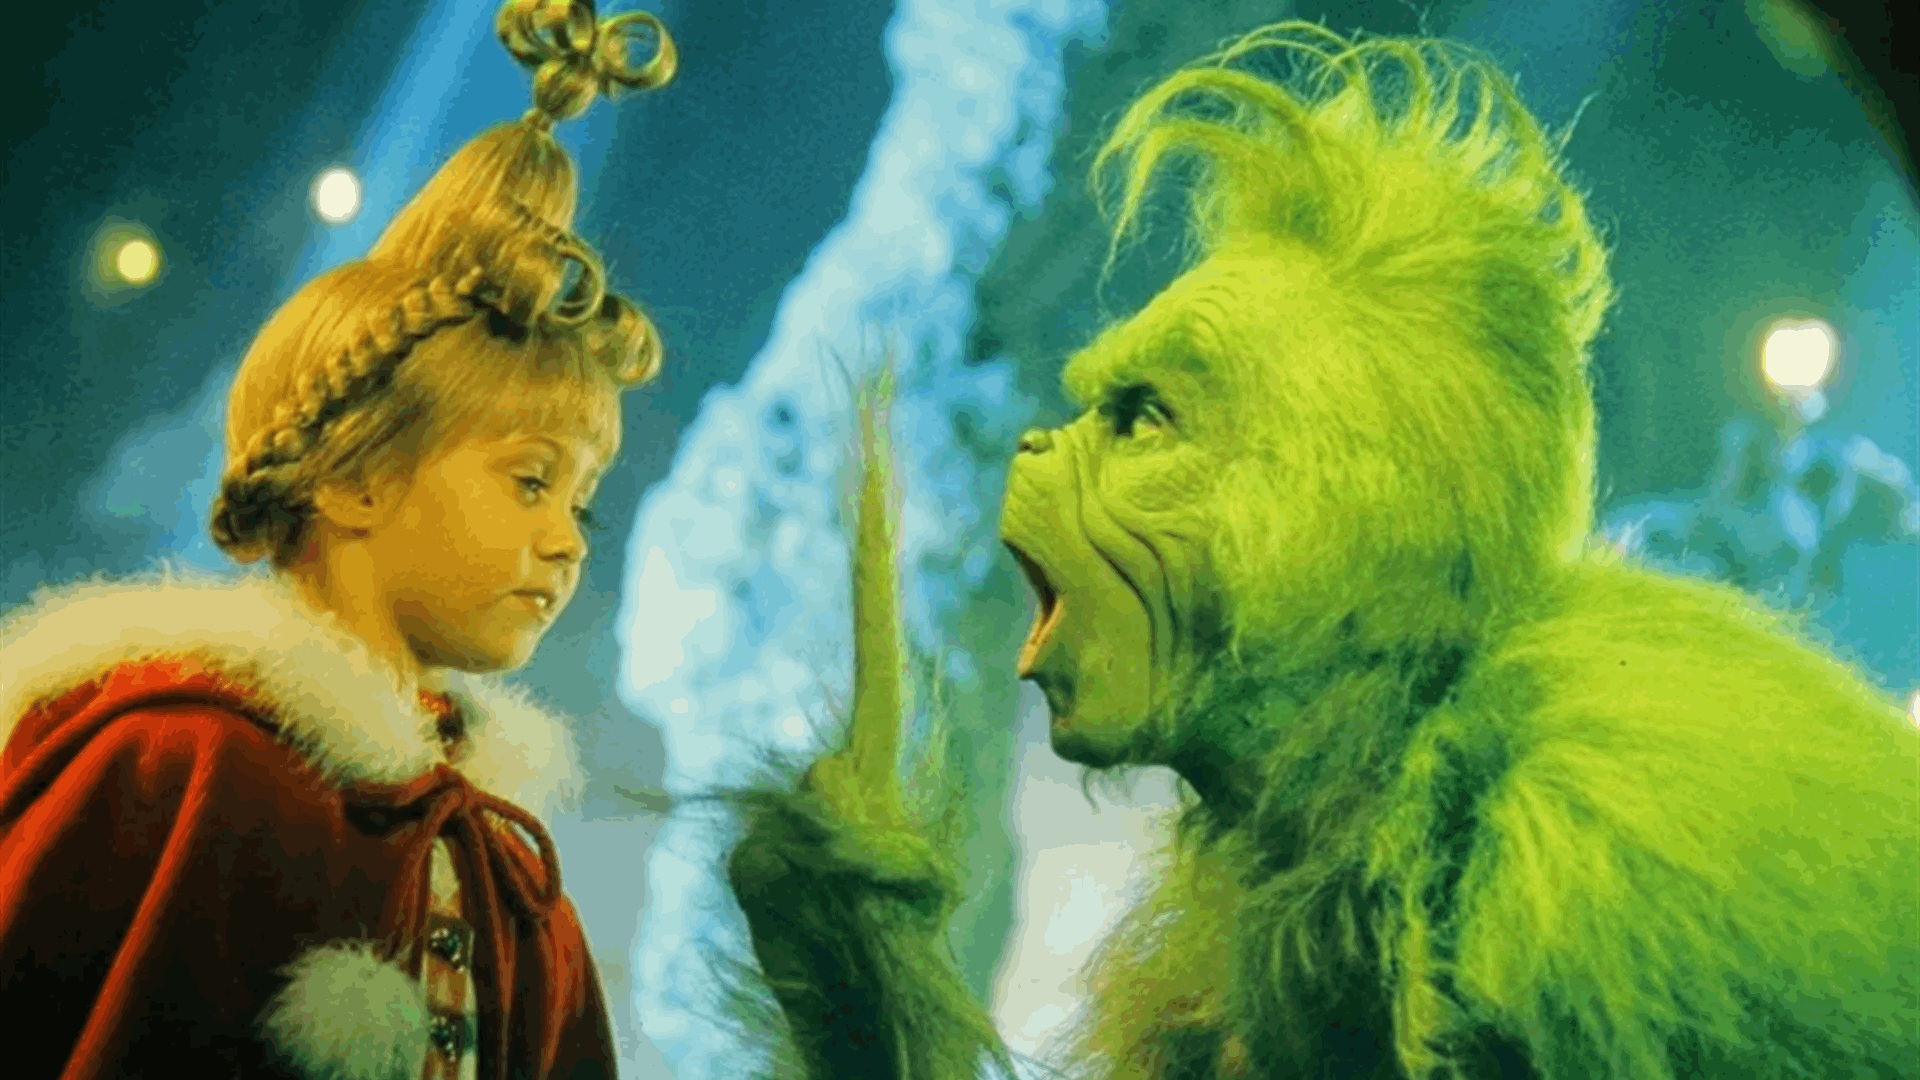 من &quot;سيندي لو&quot; ابنة الـ7 سنوات بطلة فيلم  How the Grinch Stole Christmasالى مغنية روك بملابس فاضحة! (صور)